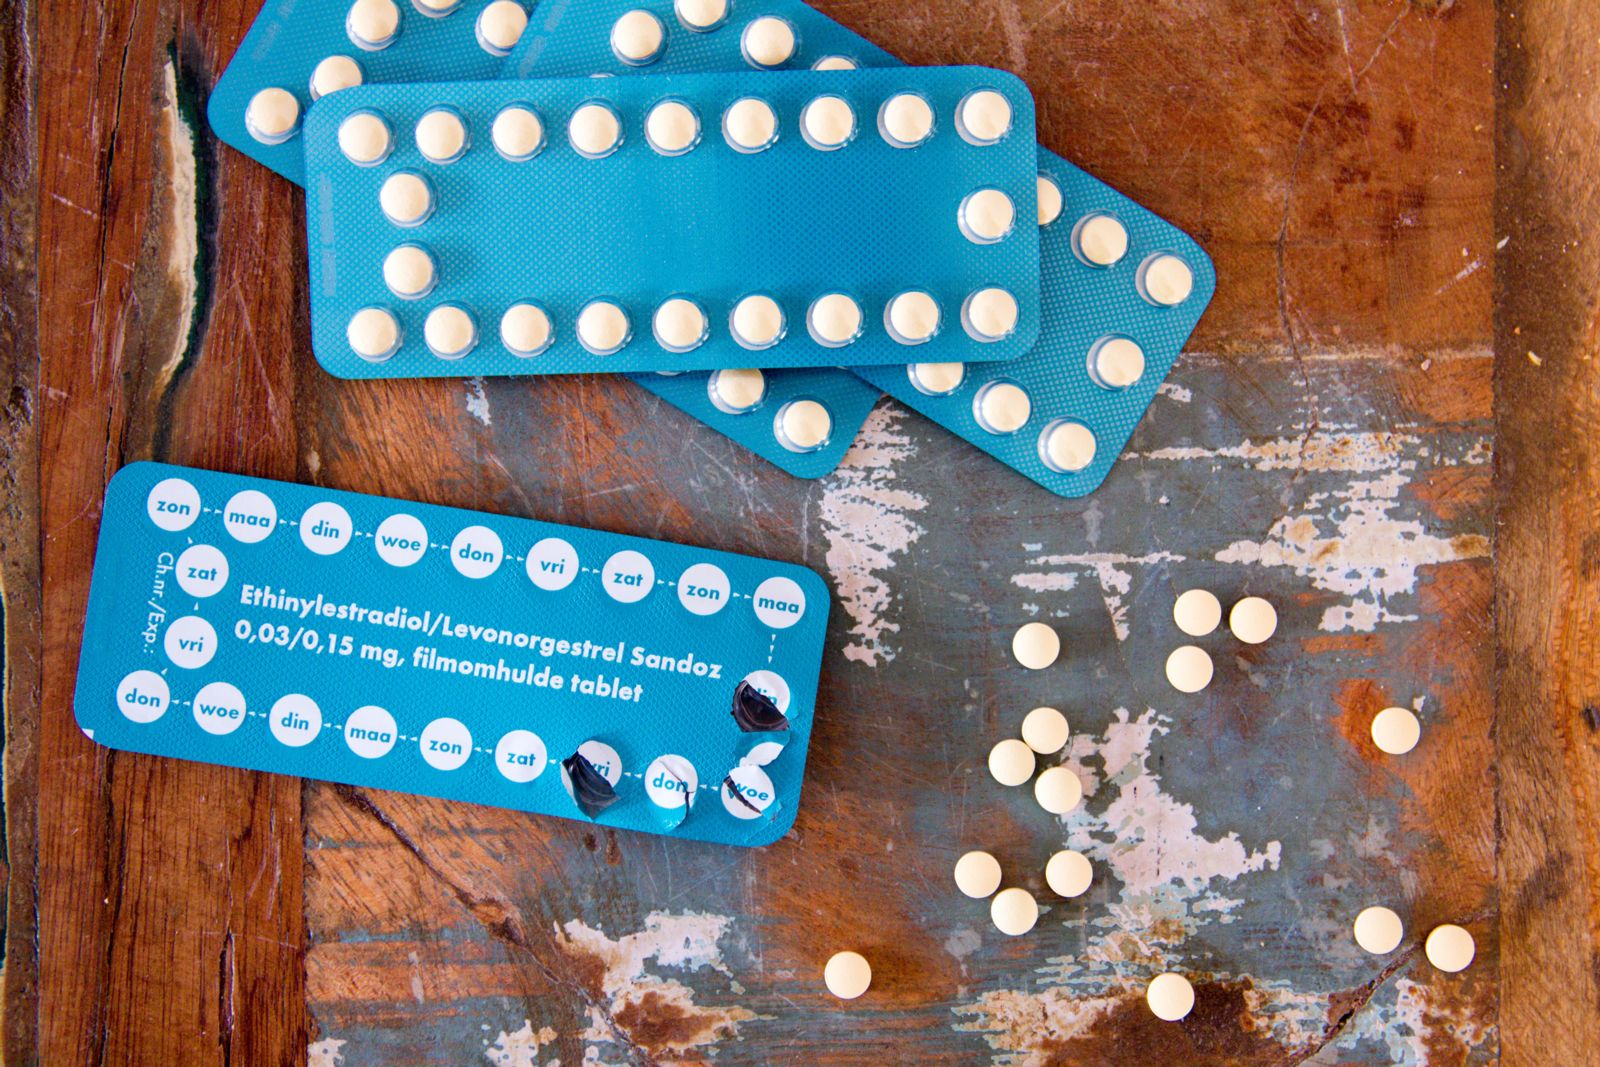 La información incompleta sobre los medicamentos anticonceptivos de emergencia pone en riesgo la salud de las mujeres